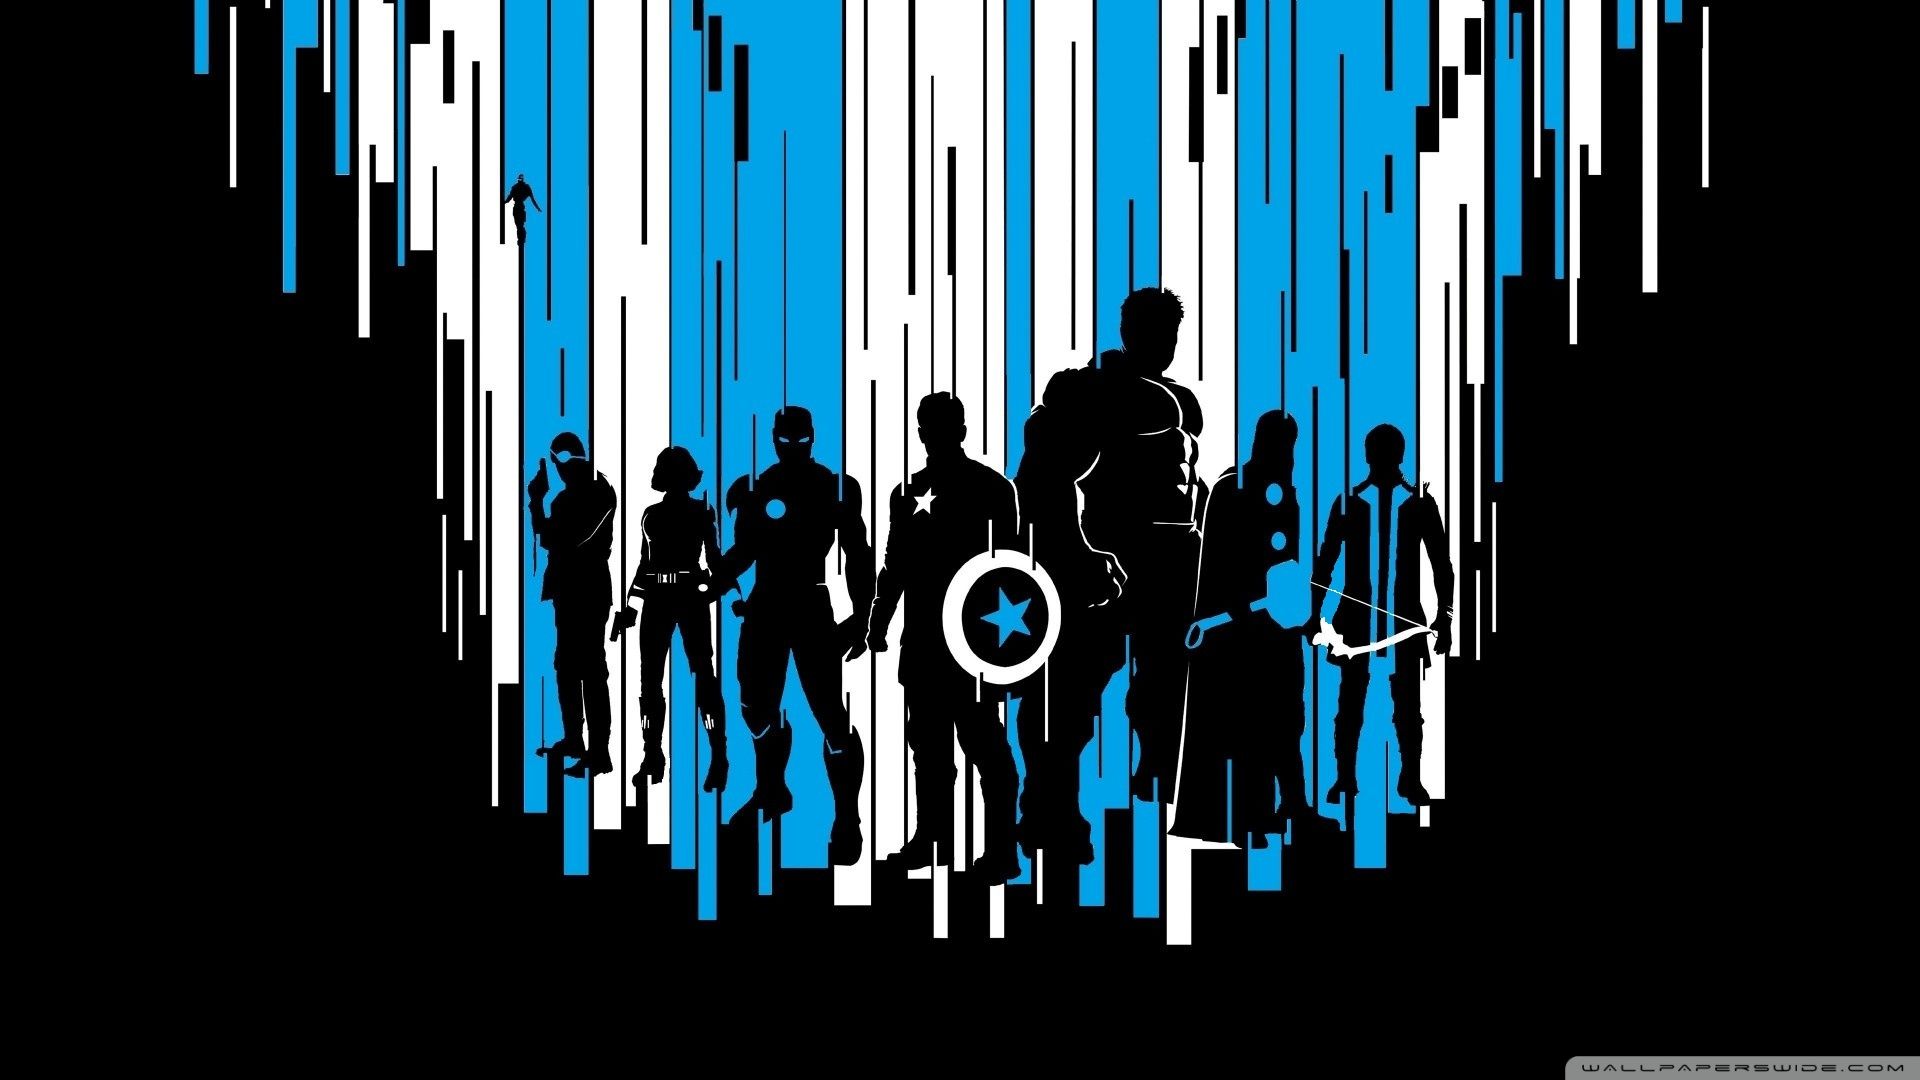 Dark Avengers Wallpaper Free Dark Avengers Background